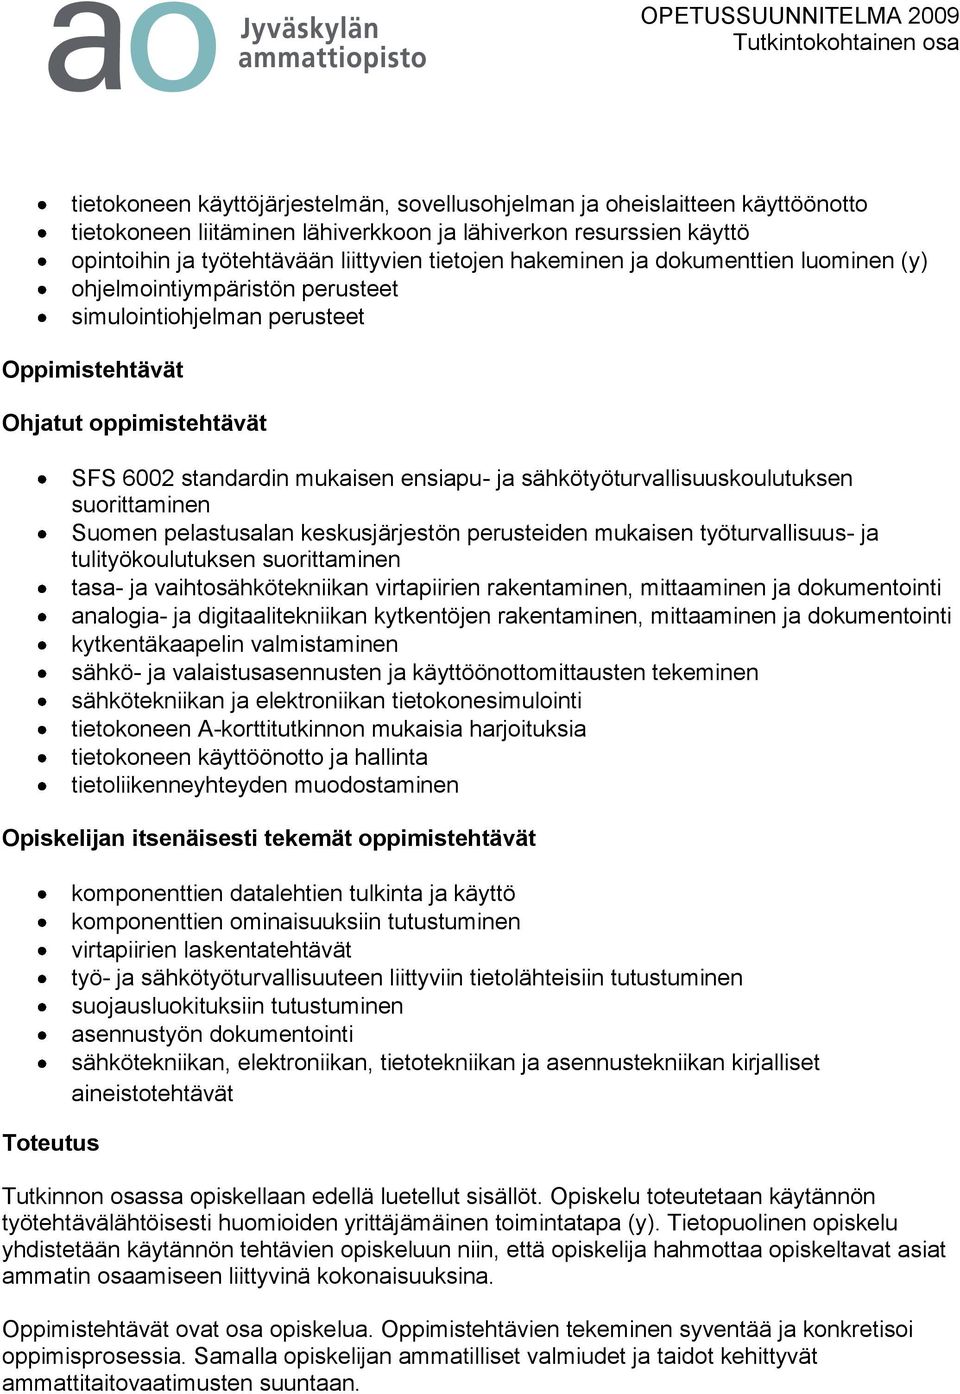 sähkötyöturvallisuuskoulutuksen suorittaminen Suomen pelastusalan keskusjärjestön perusteiden mukaisen työturvallisuus- ja tulityökoulutuksen suorittaminen tasa- ja vaihtosähkötekniikan virtapiirien